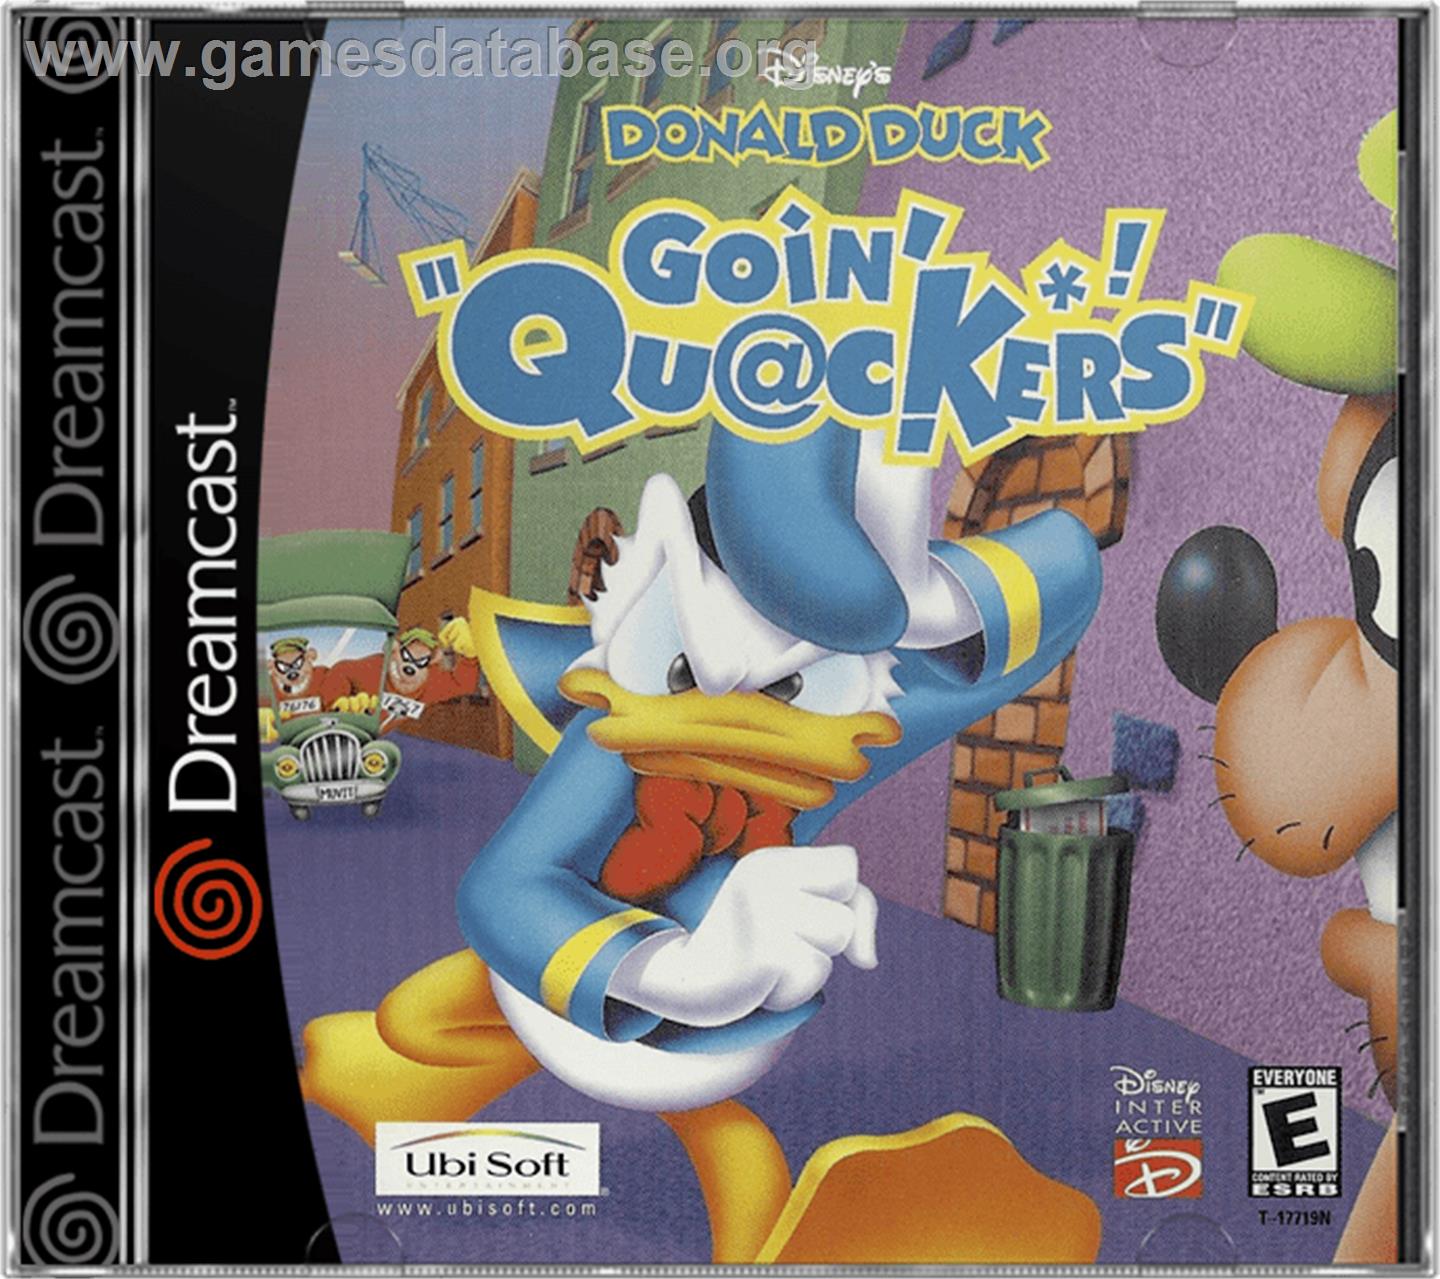 Donald Duck: Goin' Quackers - Sega Dreamcast - Artwork - Box